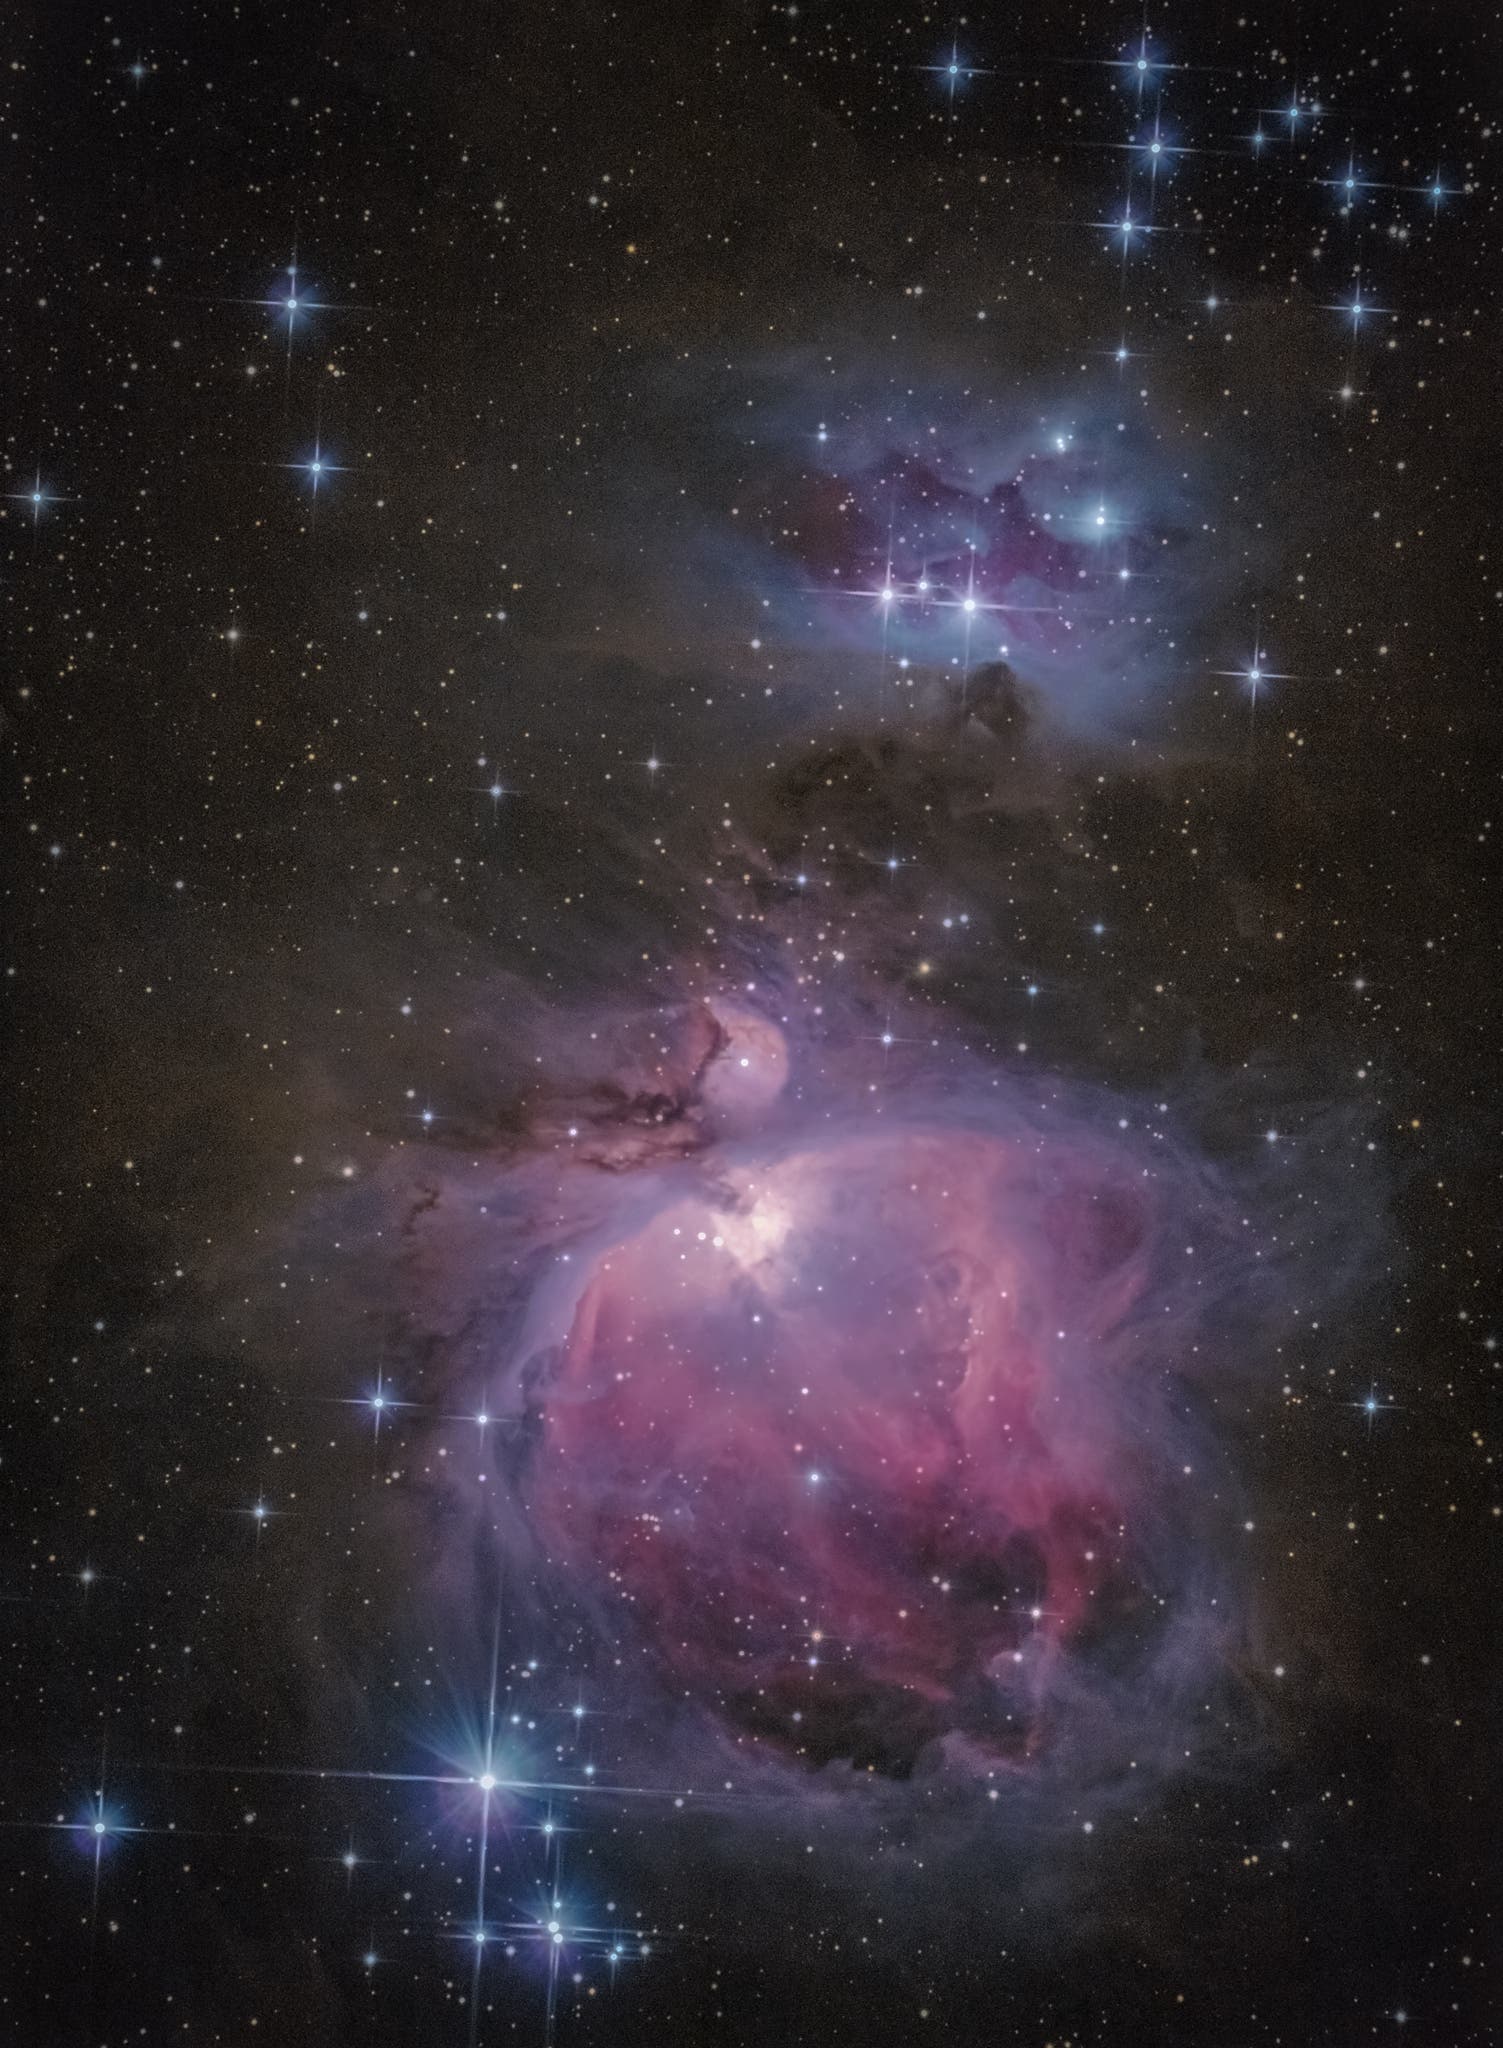 Orion-Nebel / Messier 42 